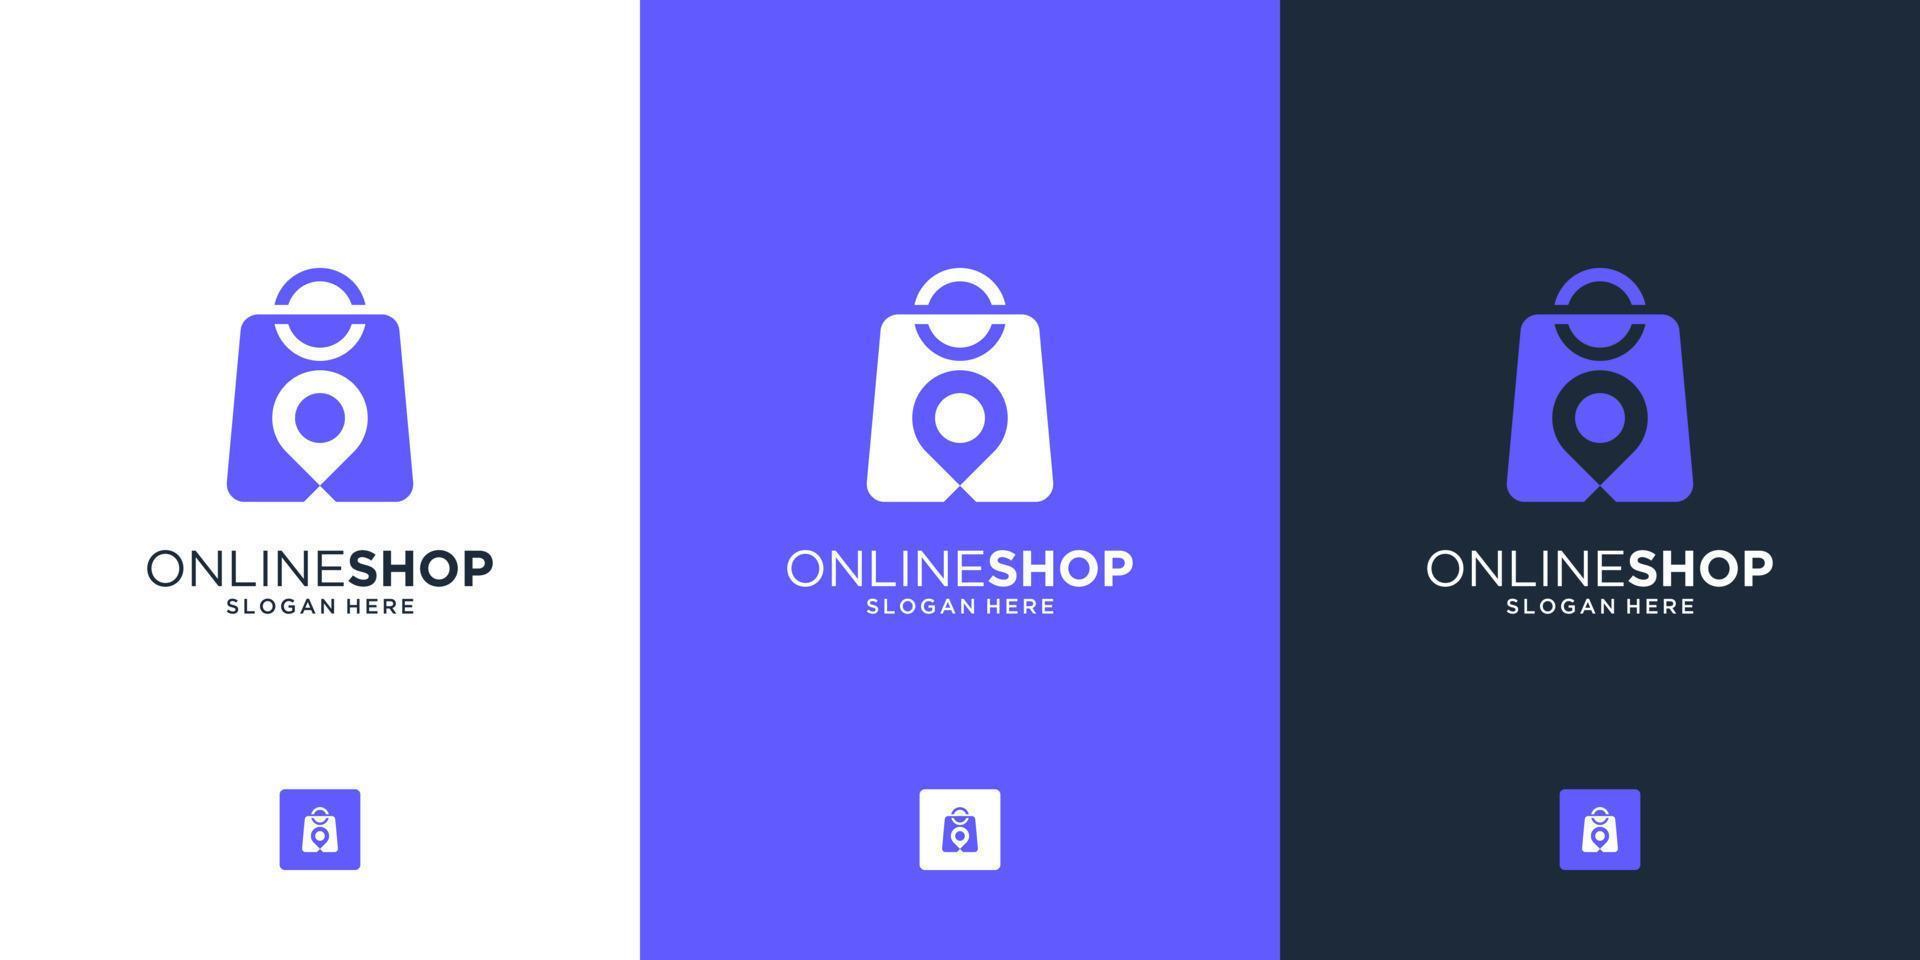 creatief combineren zak en pin plaats voor online winkel logo ontwerp vector